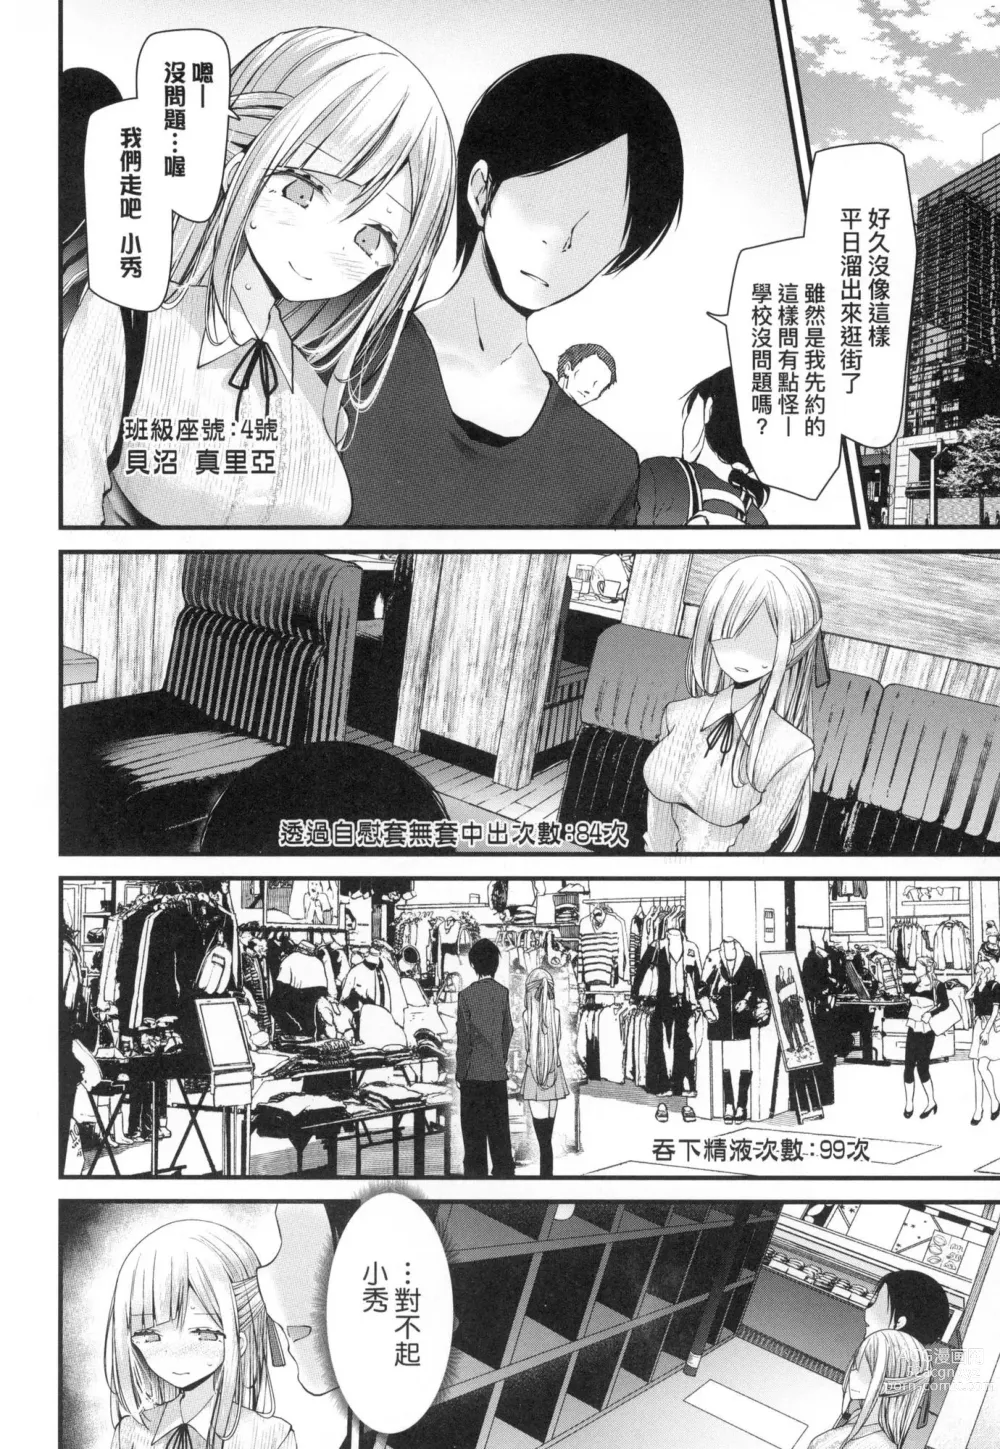 Page 198 of manga 自慰套教室-新學期- 女學生播種懲罰計畫 (decensored)